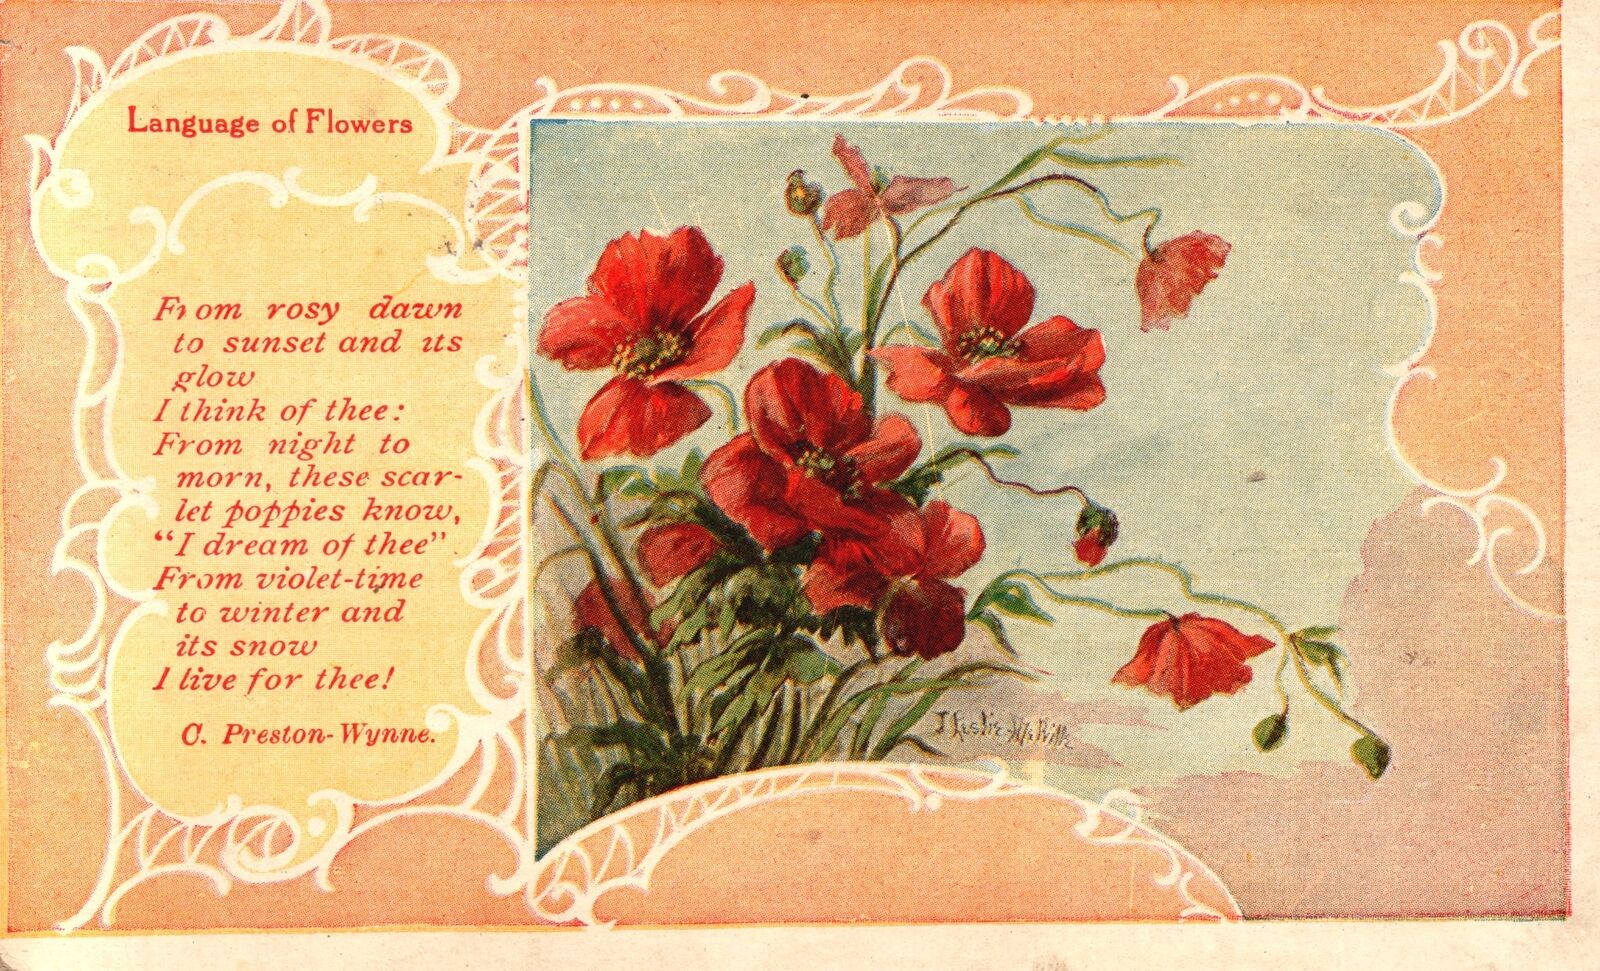 Vintage Postcard 1909 Language of Flowers Floral Blooms Poem C. Preston-Wynne